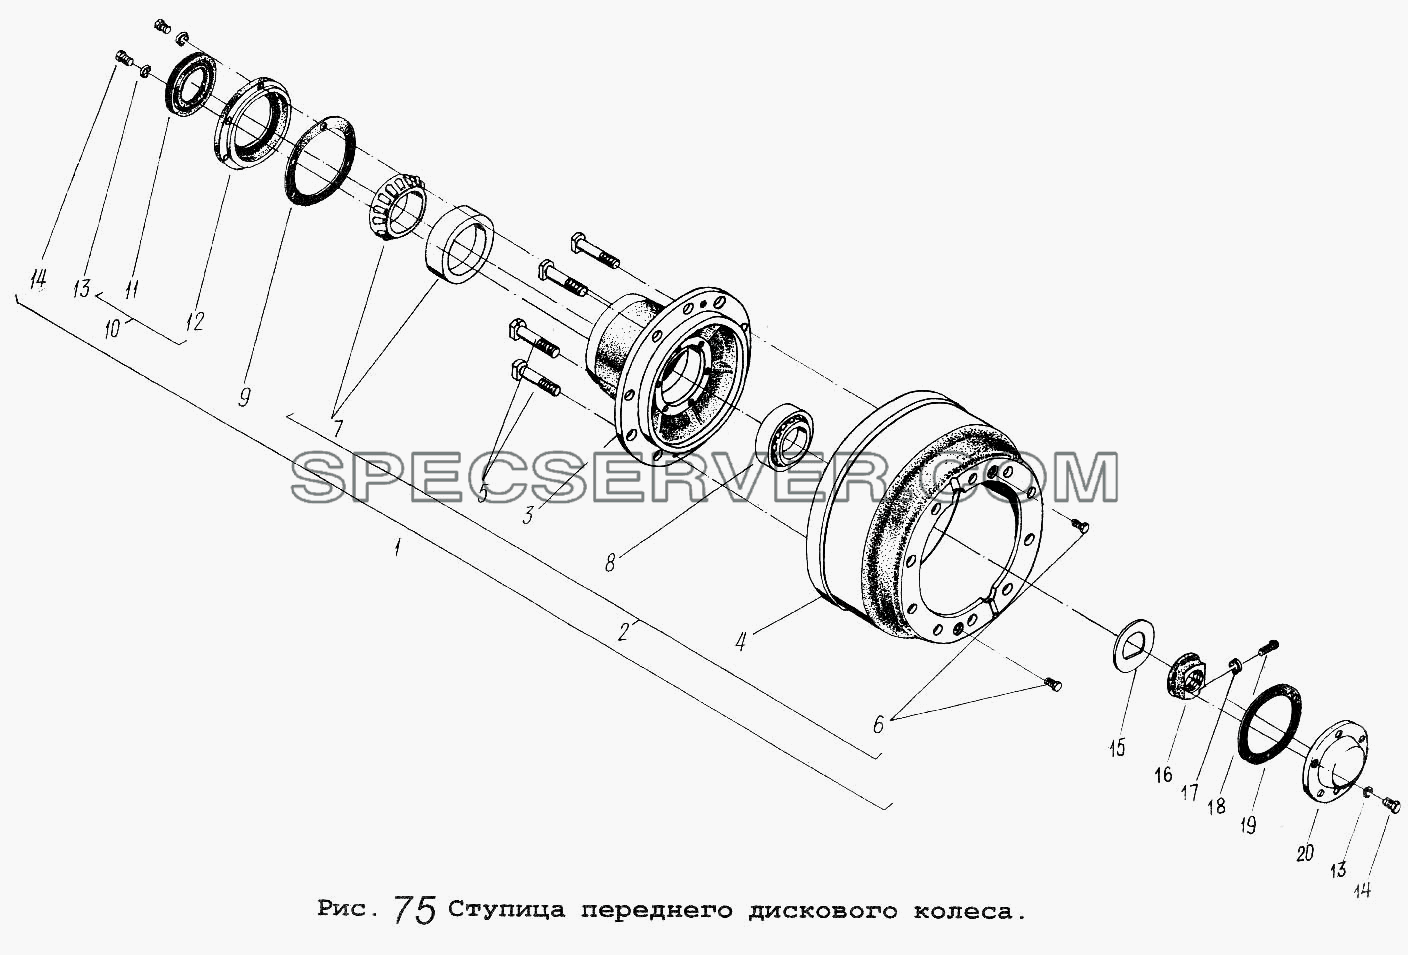 Ступица переднего дискового колеса для МАЗ-5551 (список запасных частей)